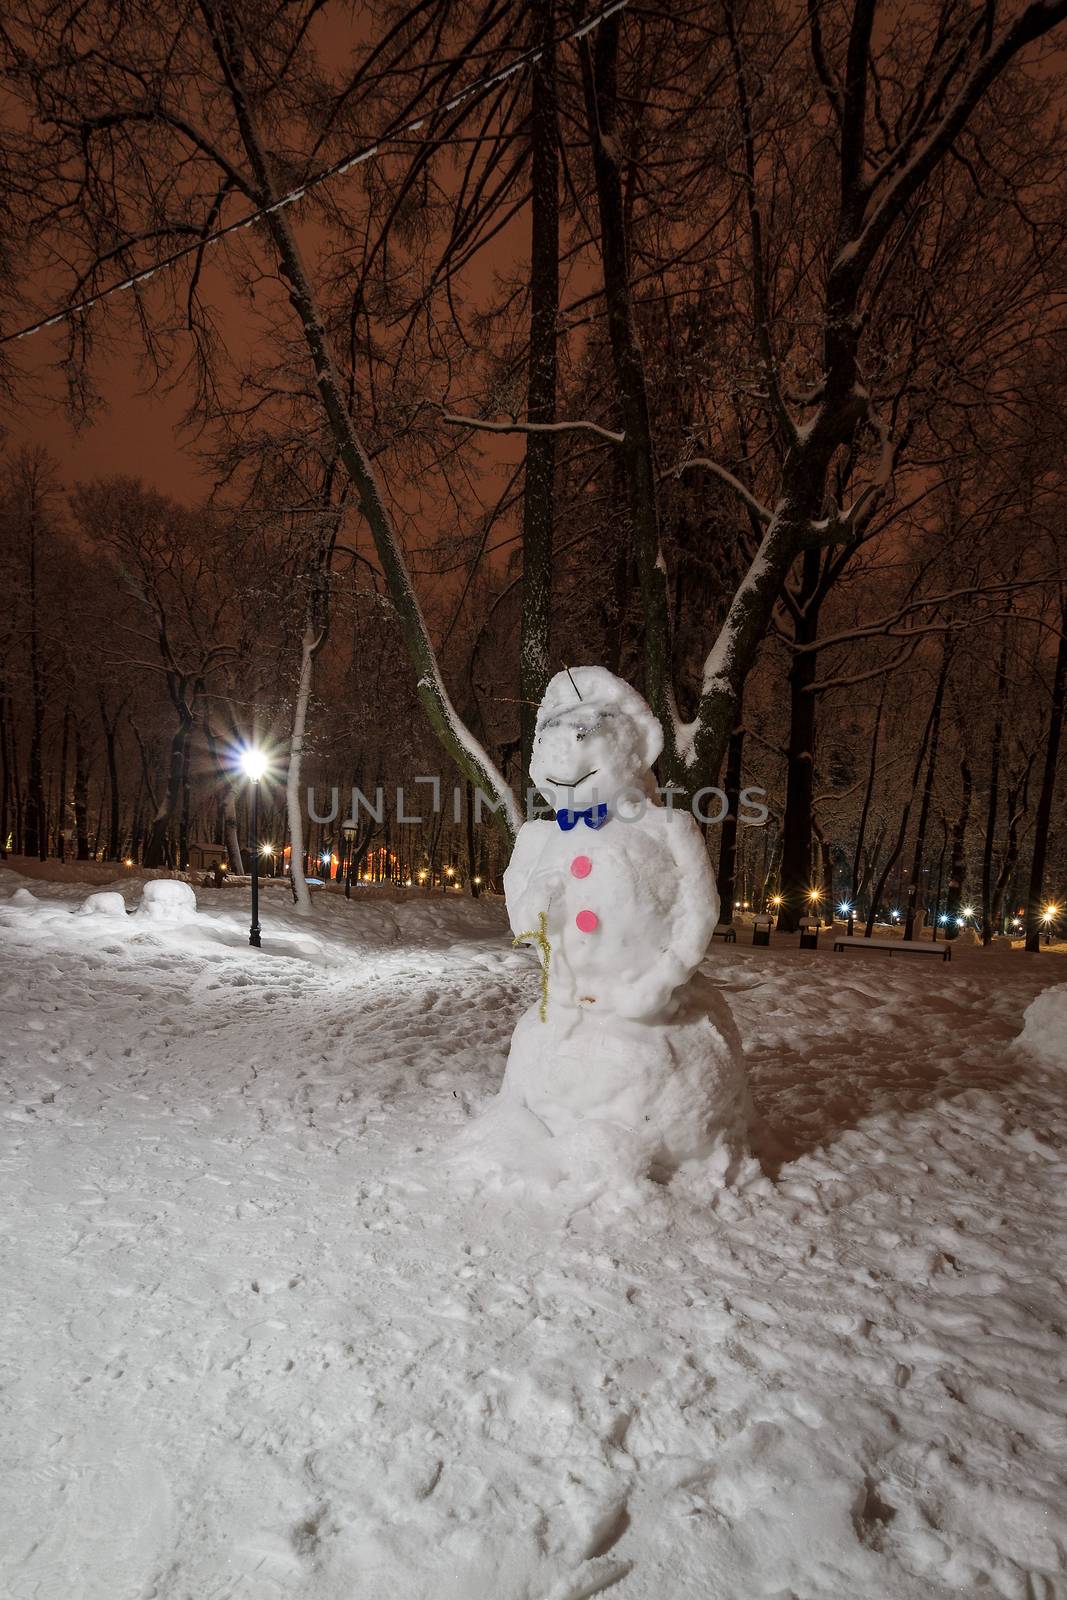 snowman at night park by Eugene_Yemelyanov